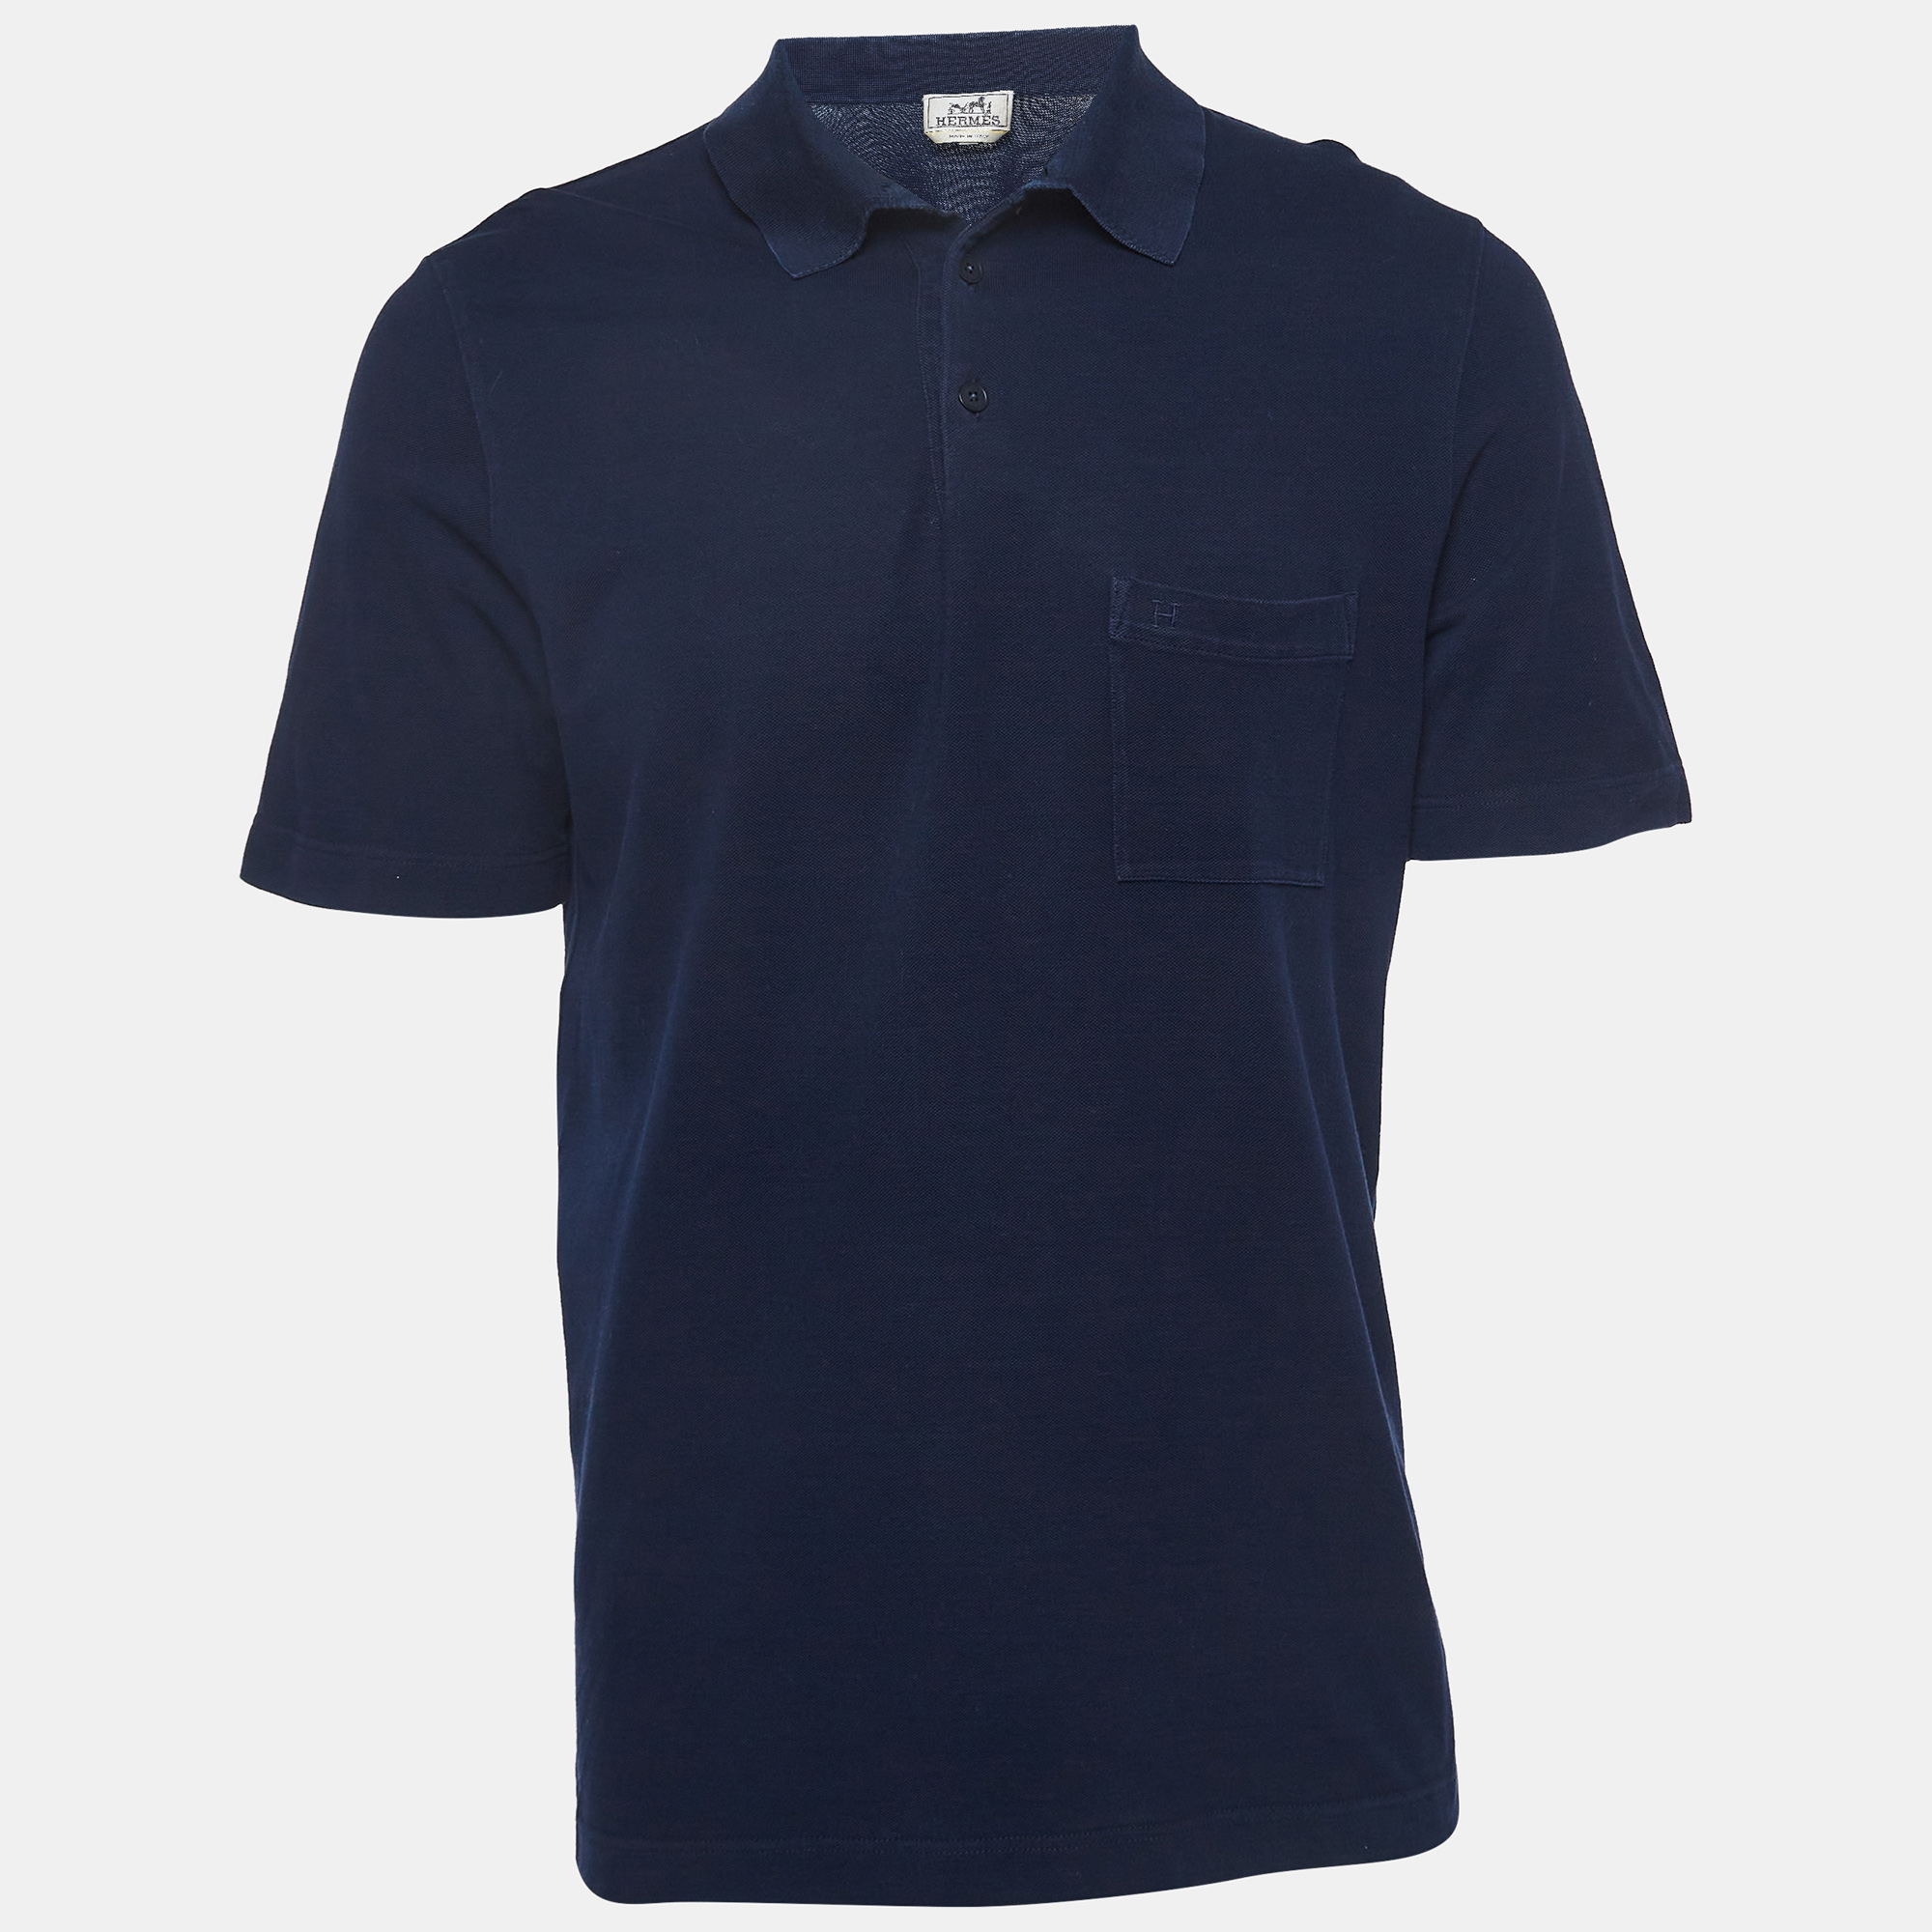 Hermes Navy Blue Cotton Pique Polo T-Shirt L